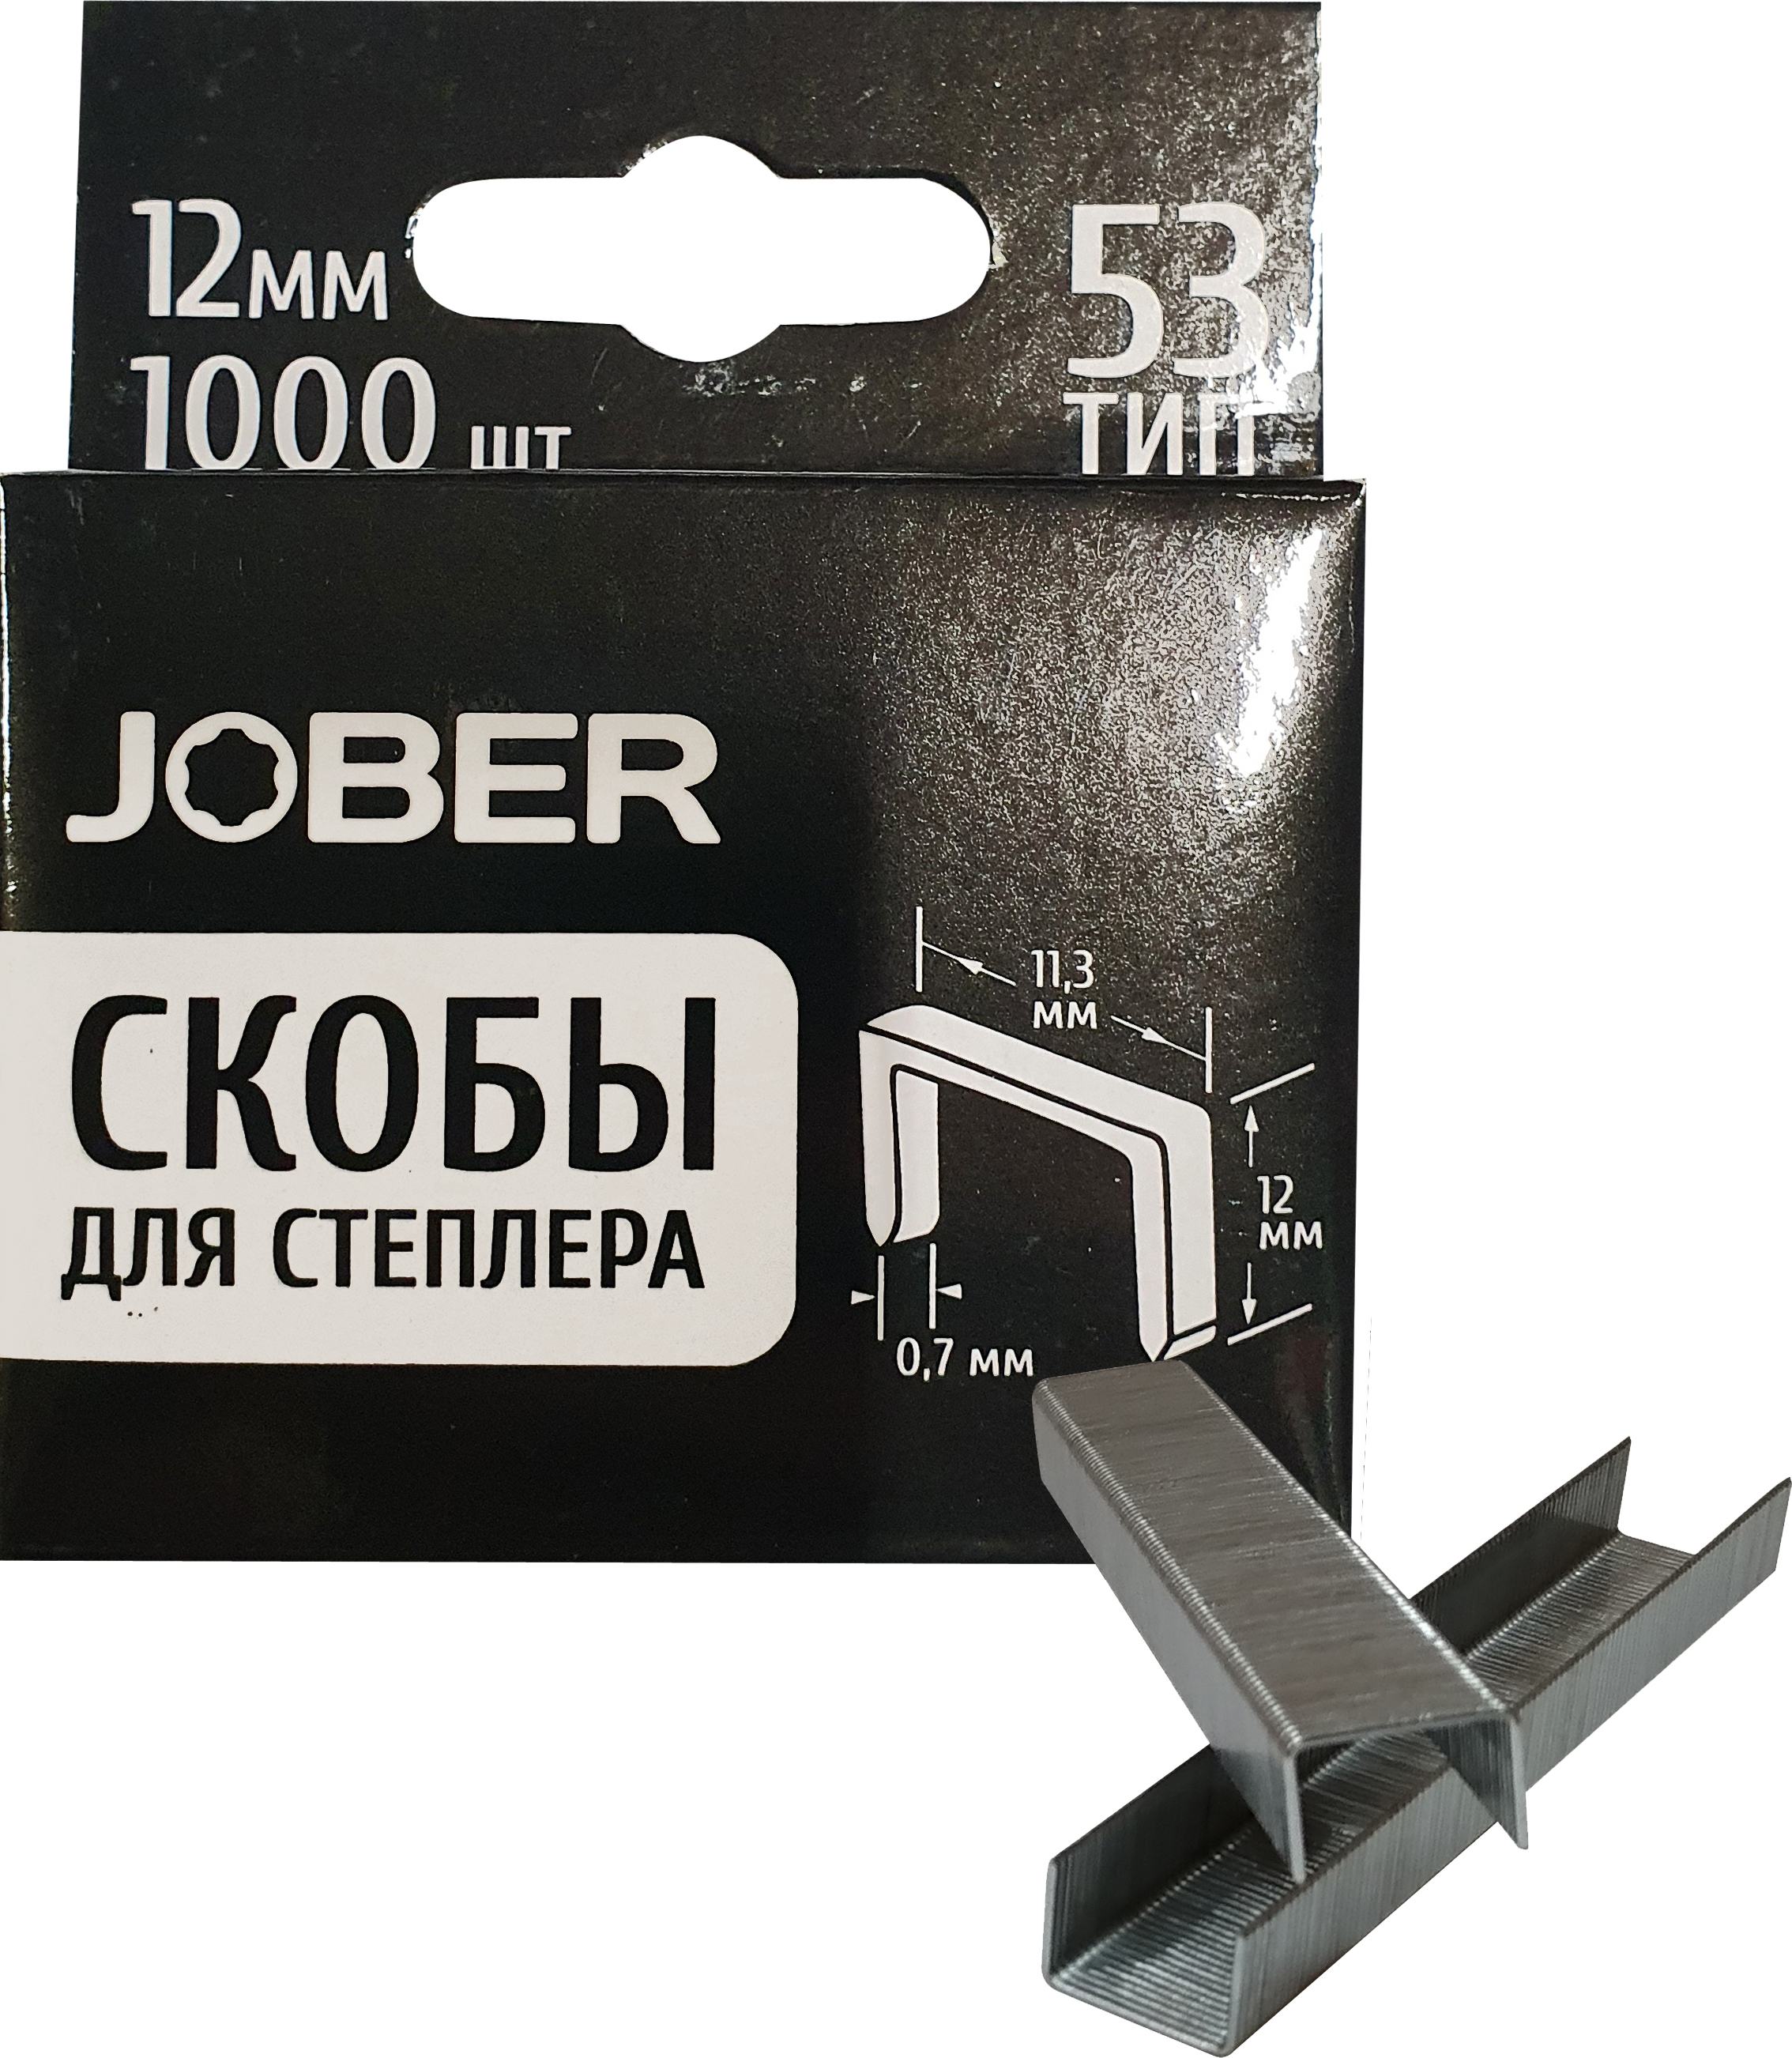 Скобы для степлера Тип 53 12мм 1000шт закаленные Jober/044